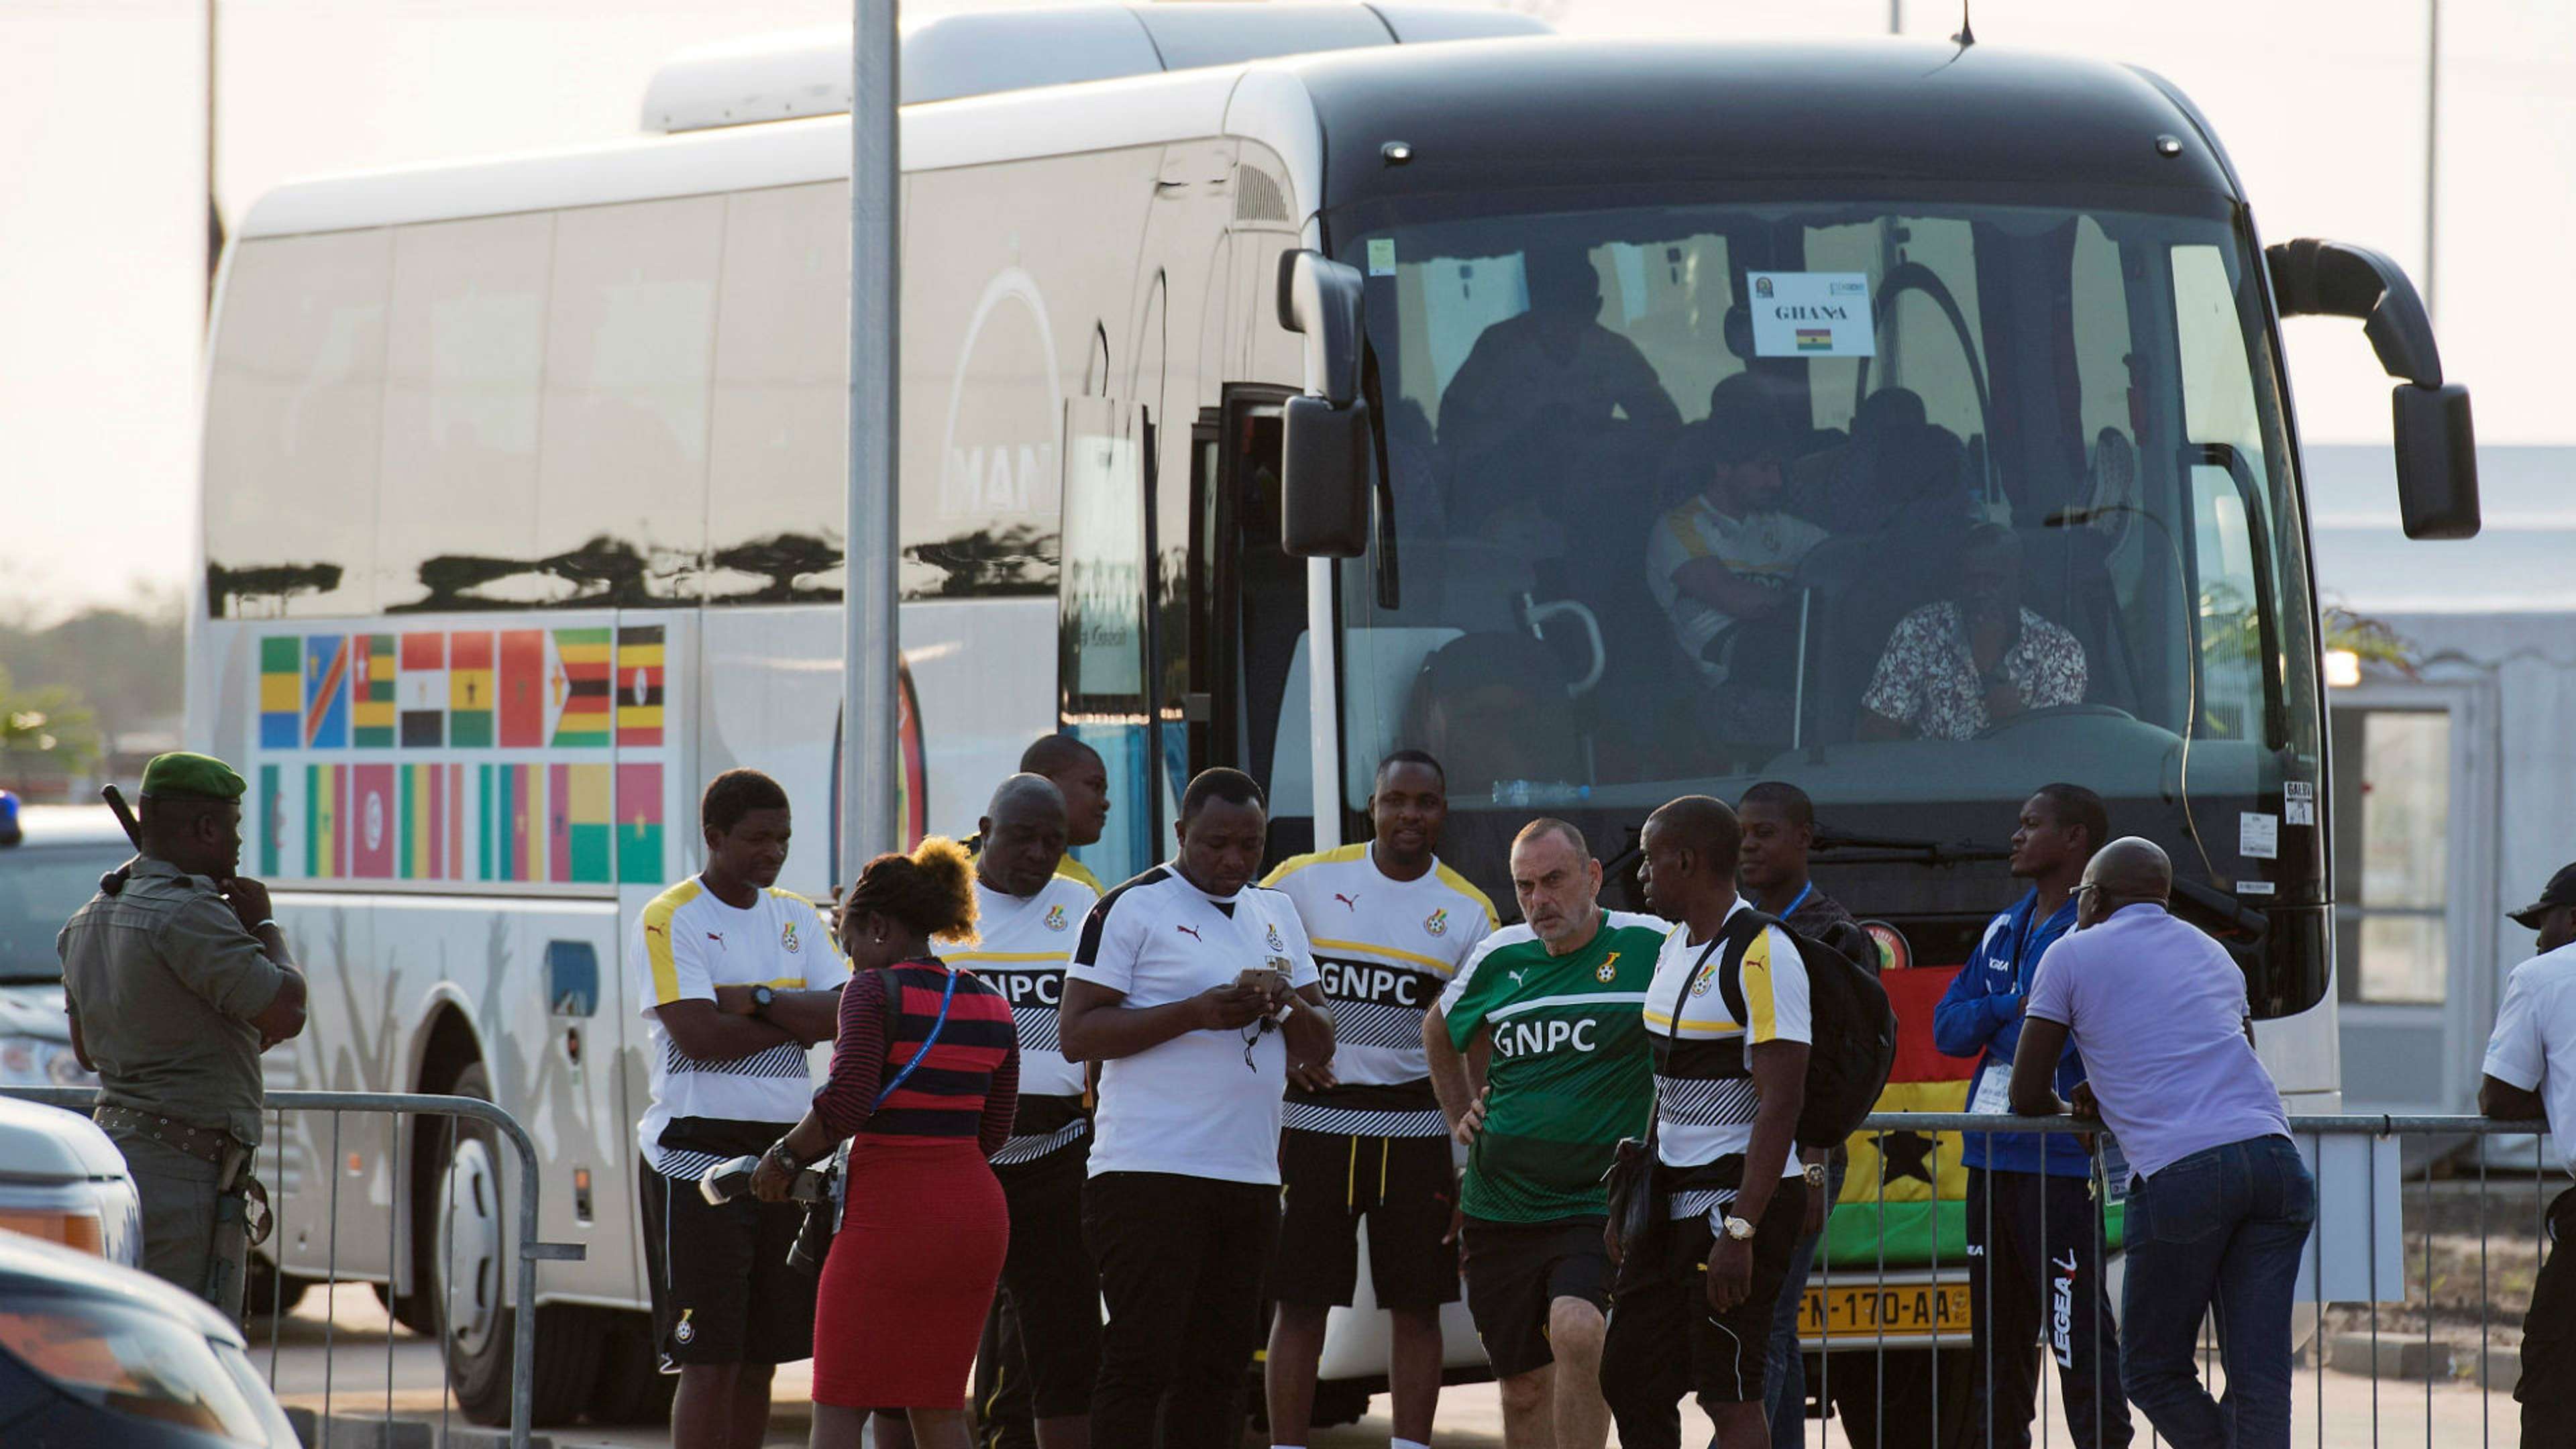 Avram Grant Ghana Team Bus 19012017